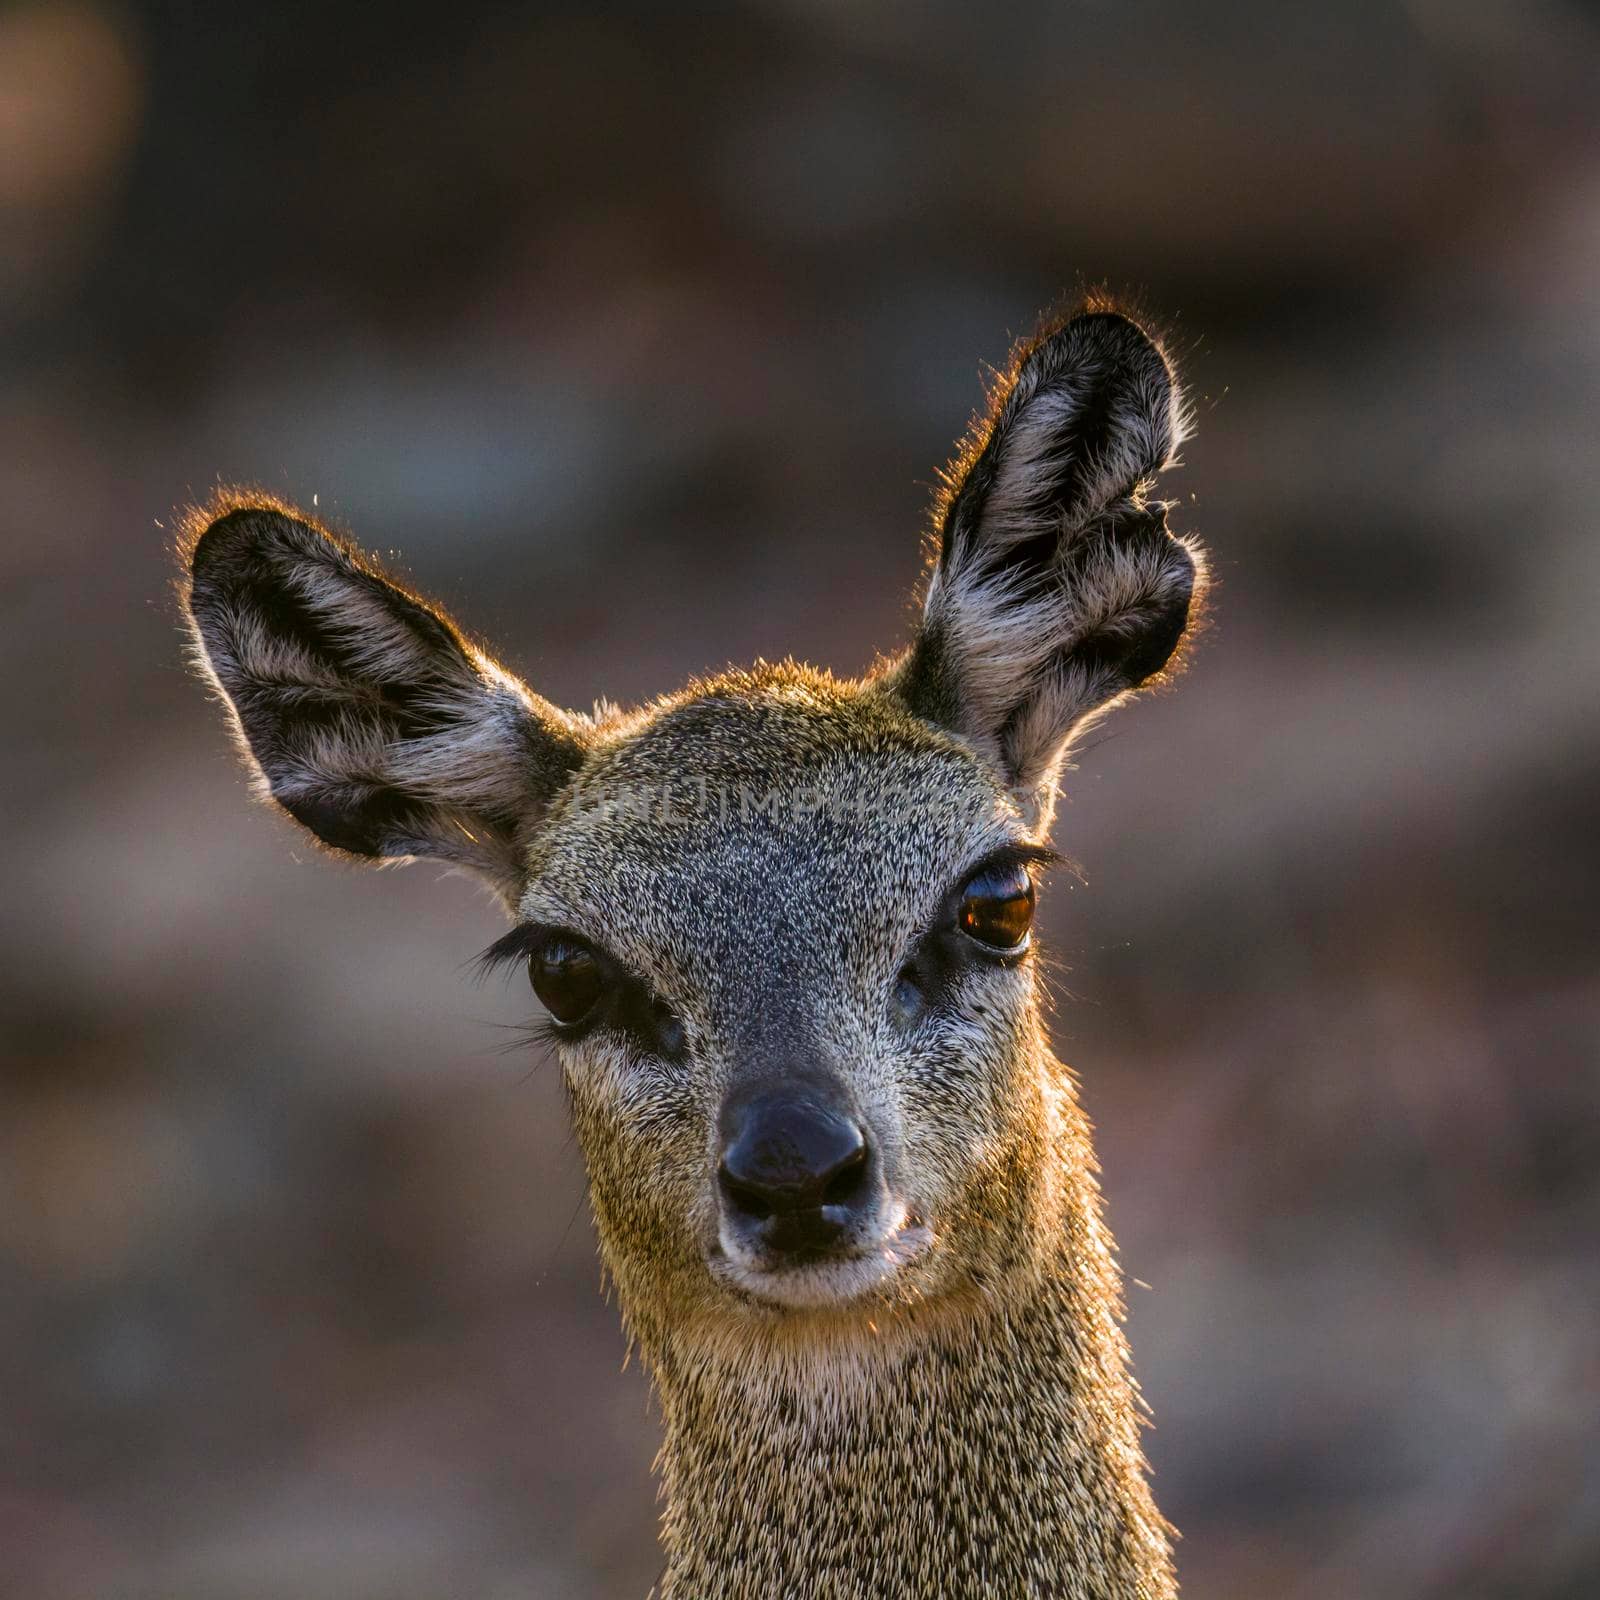 Klipspringer in Kruger National park, South Africa by PACOCOMO